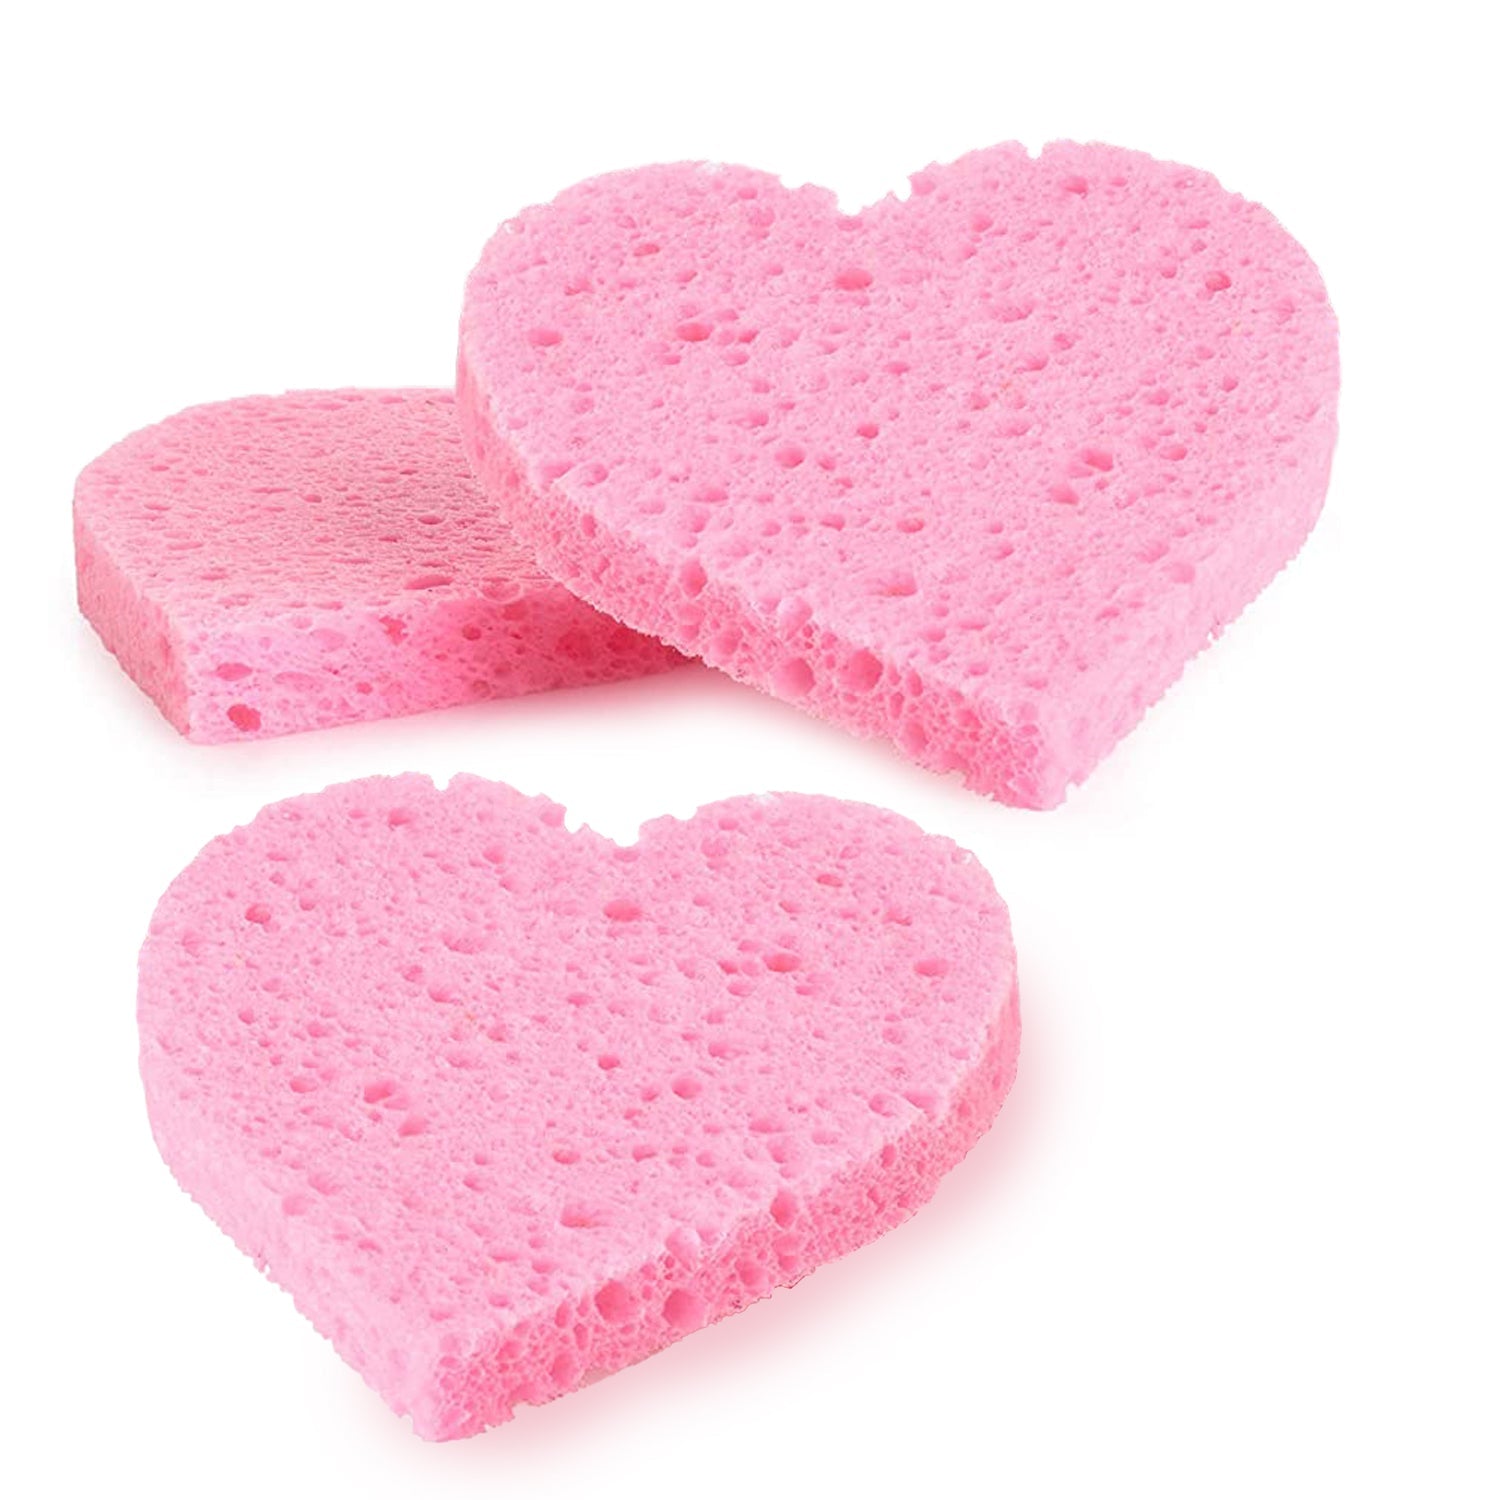 3 Pieces Heart Shaped Sponges